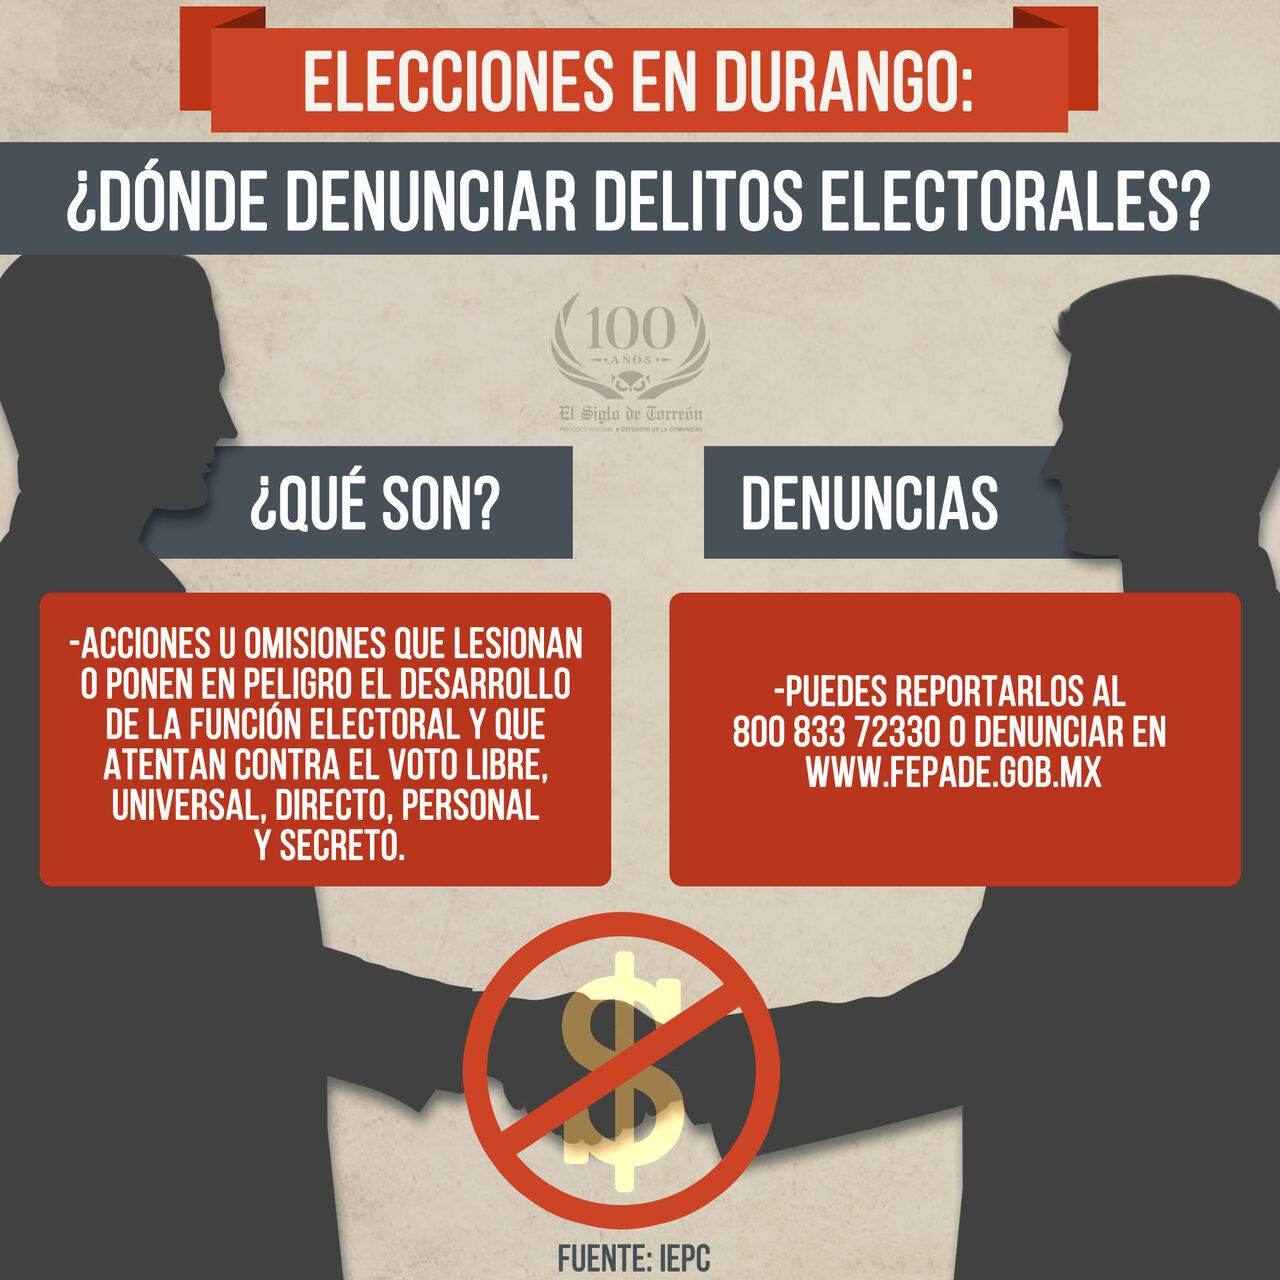 Elecciones en Durango: ¿dónde puedo reportar delitos electorales?